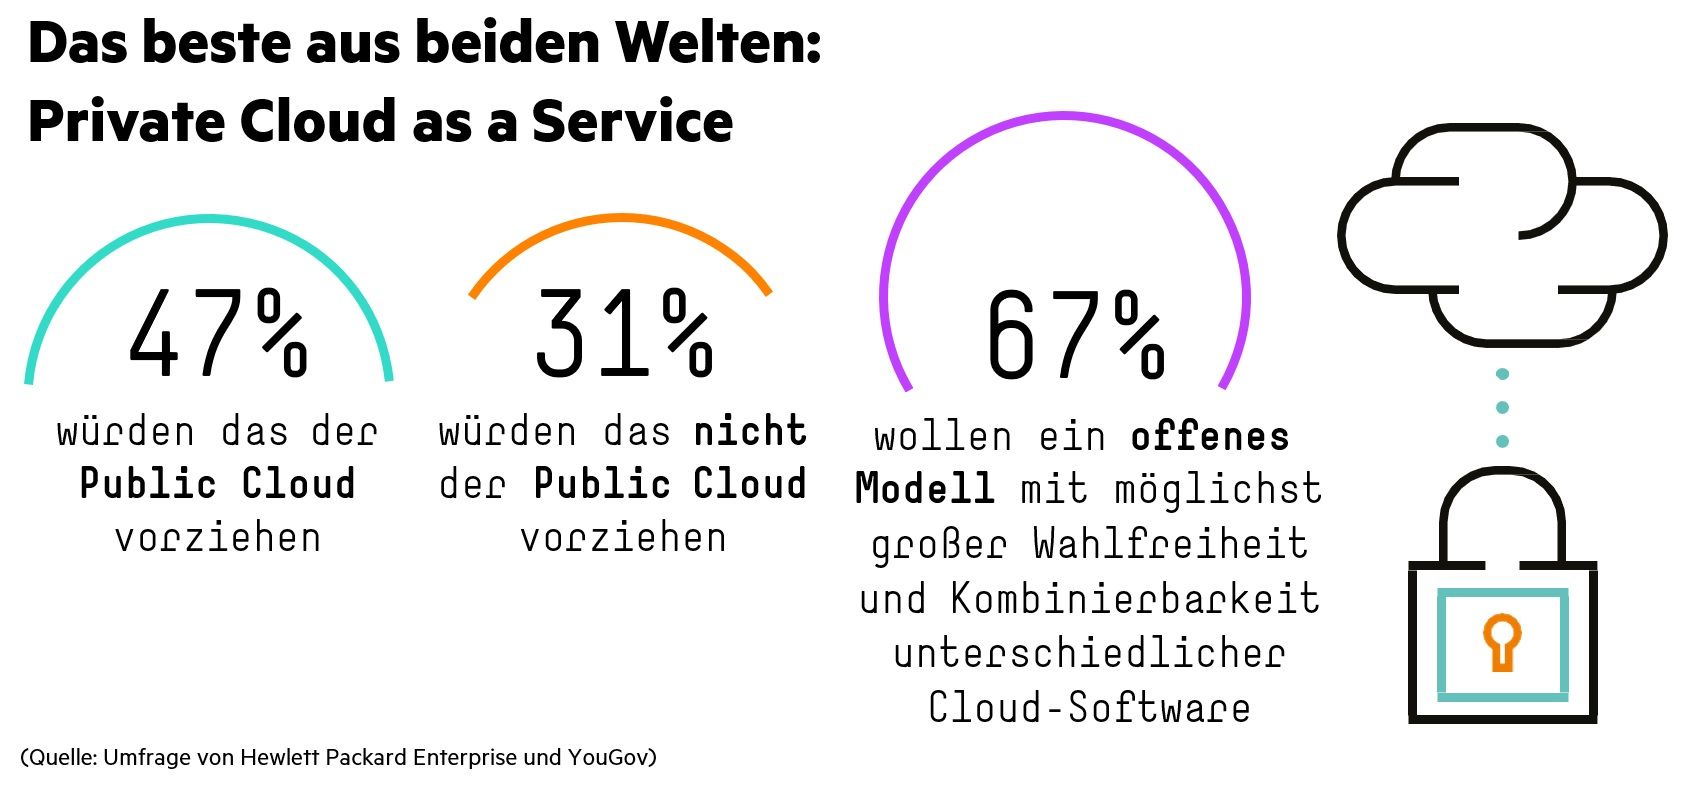 Corona-Zwischenbilanz: Umfrage von HPE und YouGov zur Cloud-Nutzung unter 827 Führungskräften in Deutschland